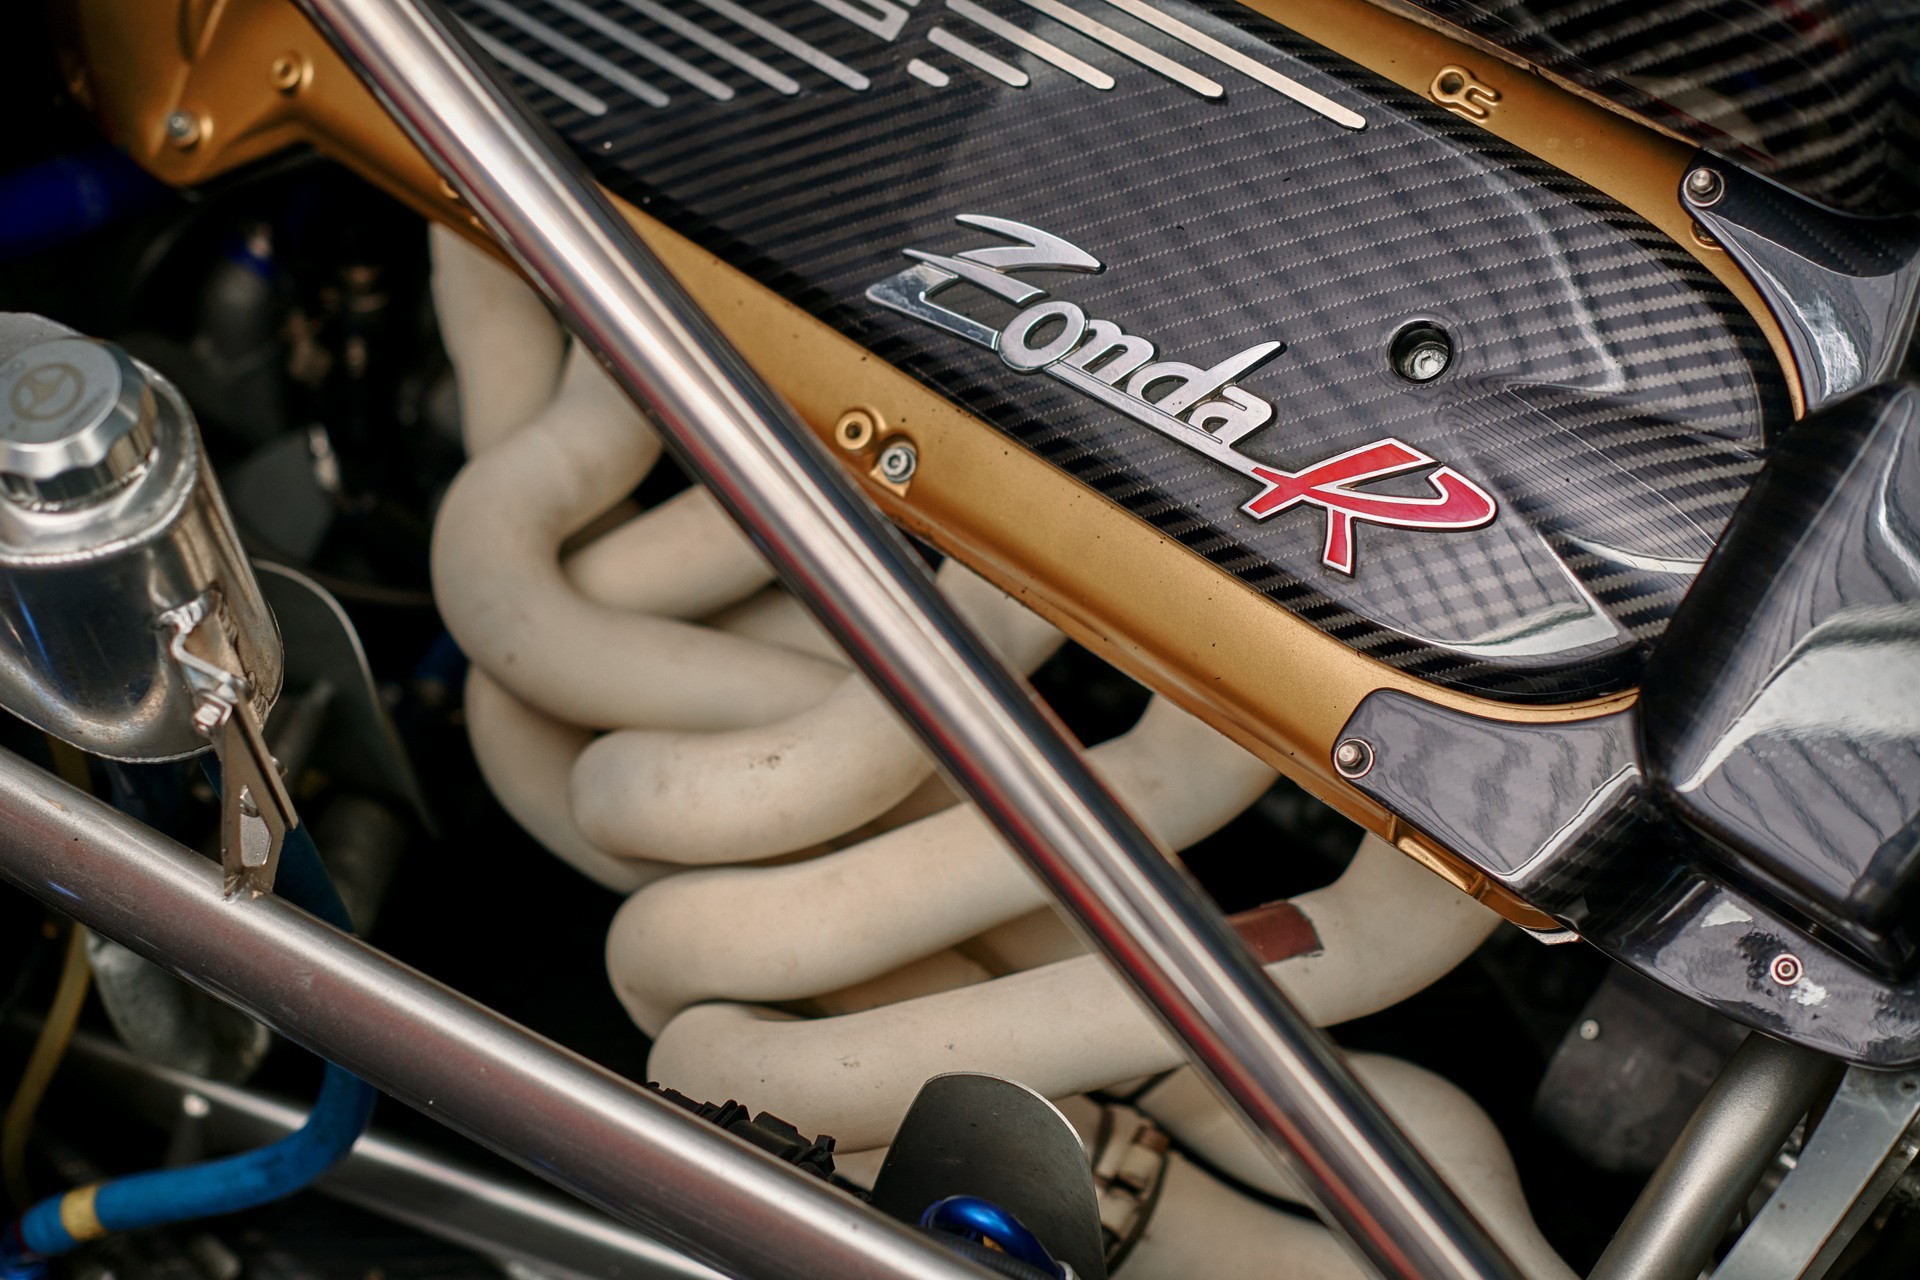 Редкий Pagani Zonda R Evolution выставлен на продажу